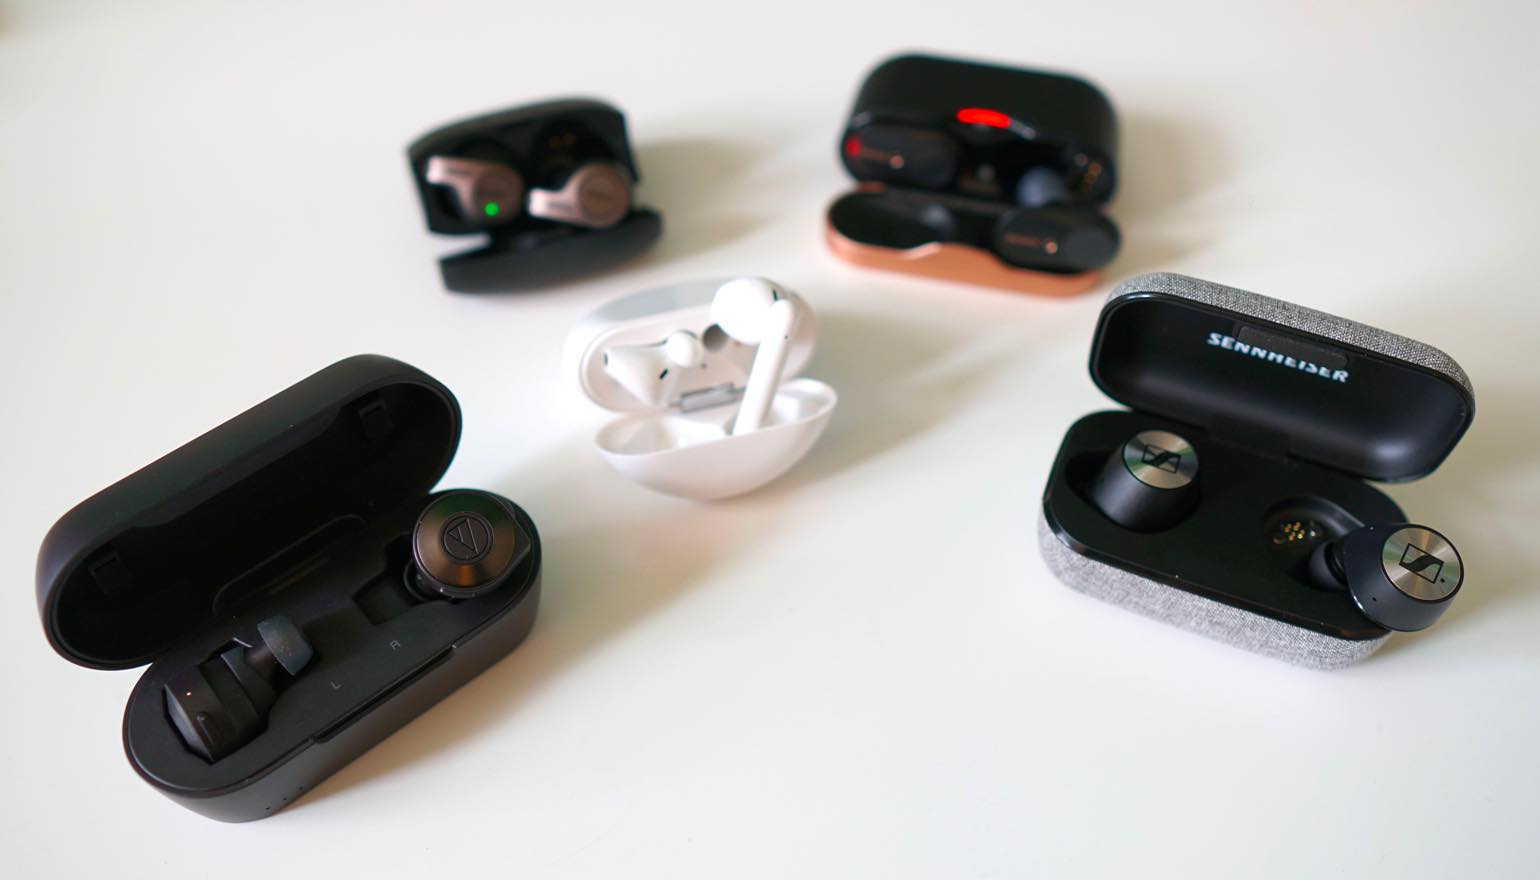 Integraal Ineenstorting makkelijk te gebruiken Dossier: vijf in-ear hoofdtelefoons vergeleken - oortjes zonder draadjes |  FWD